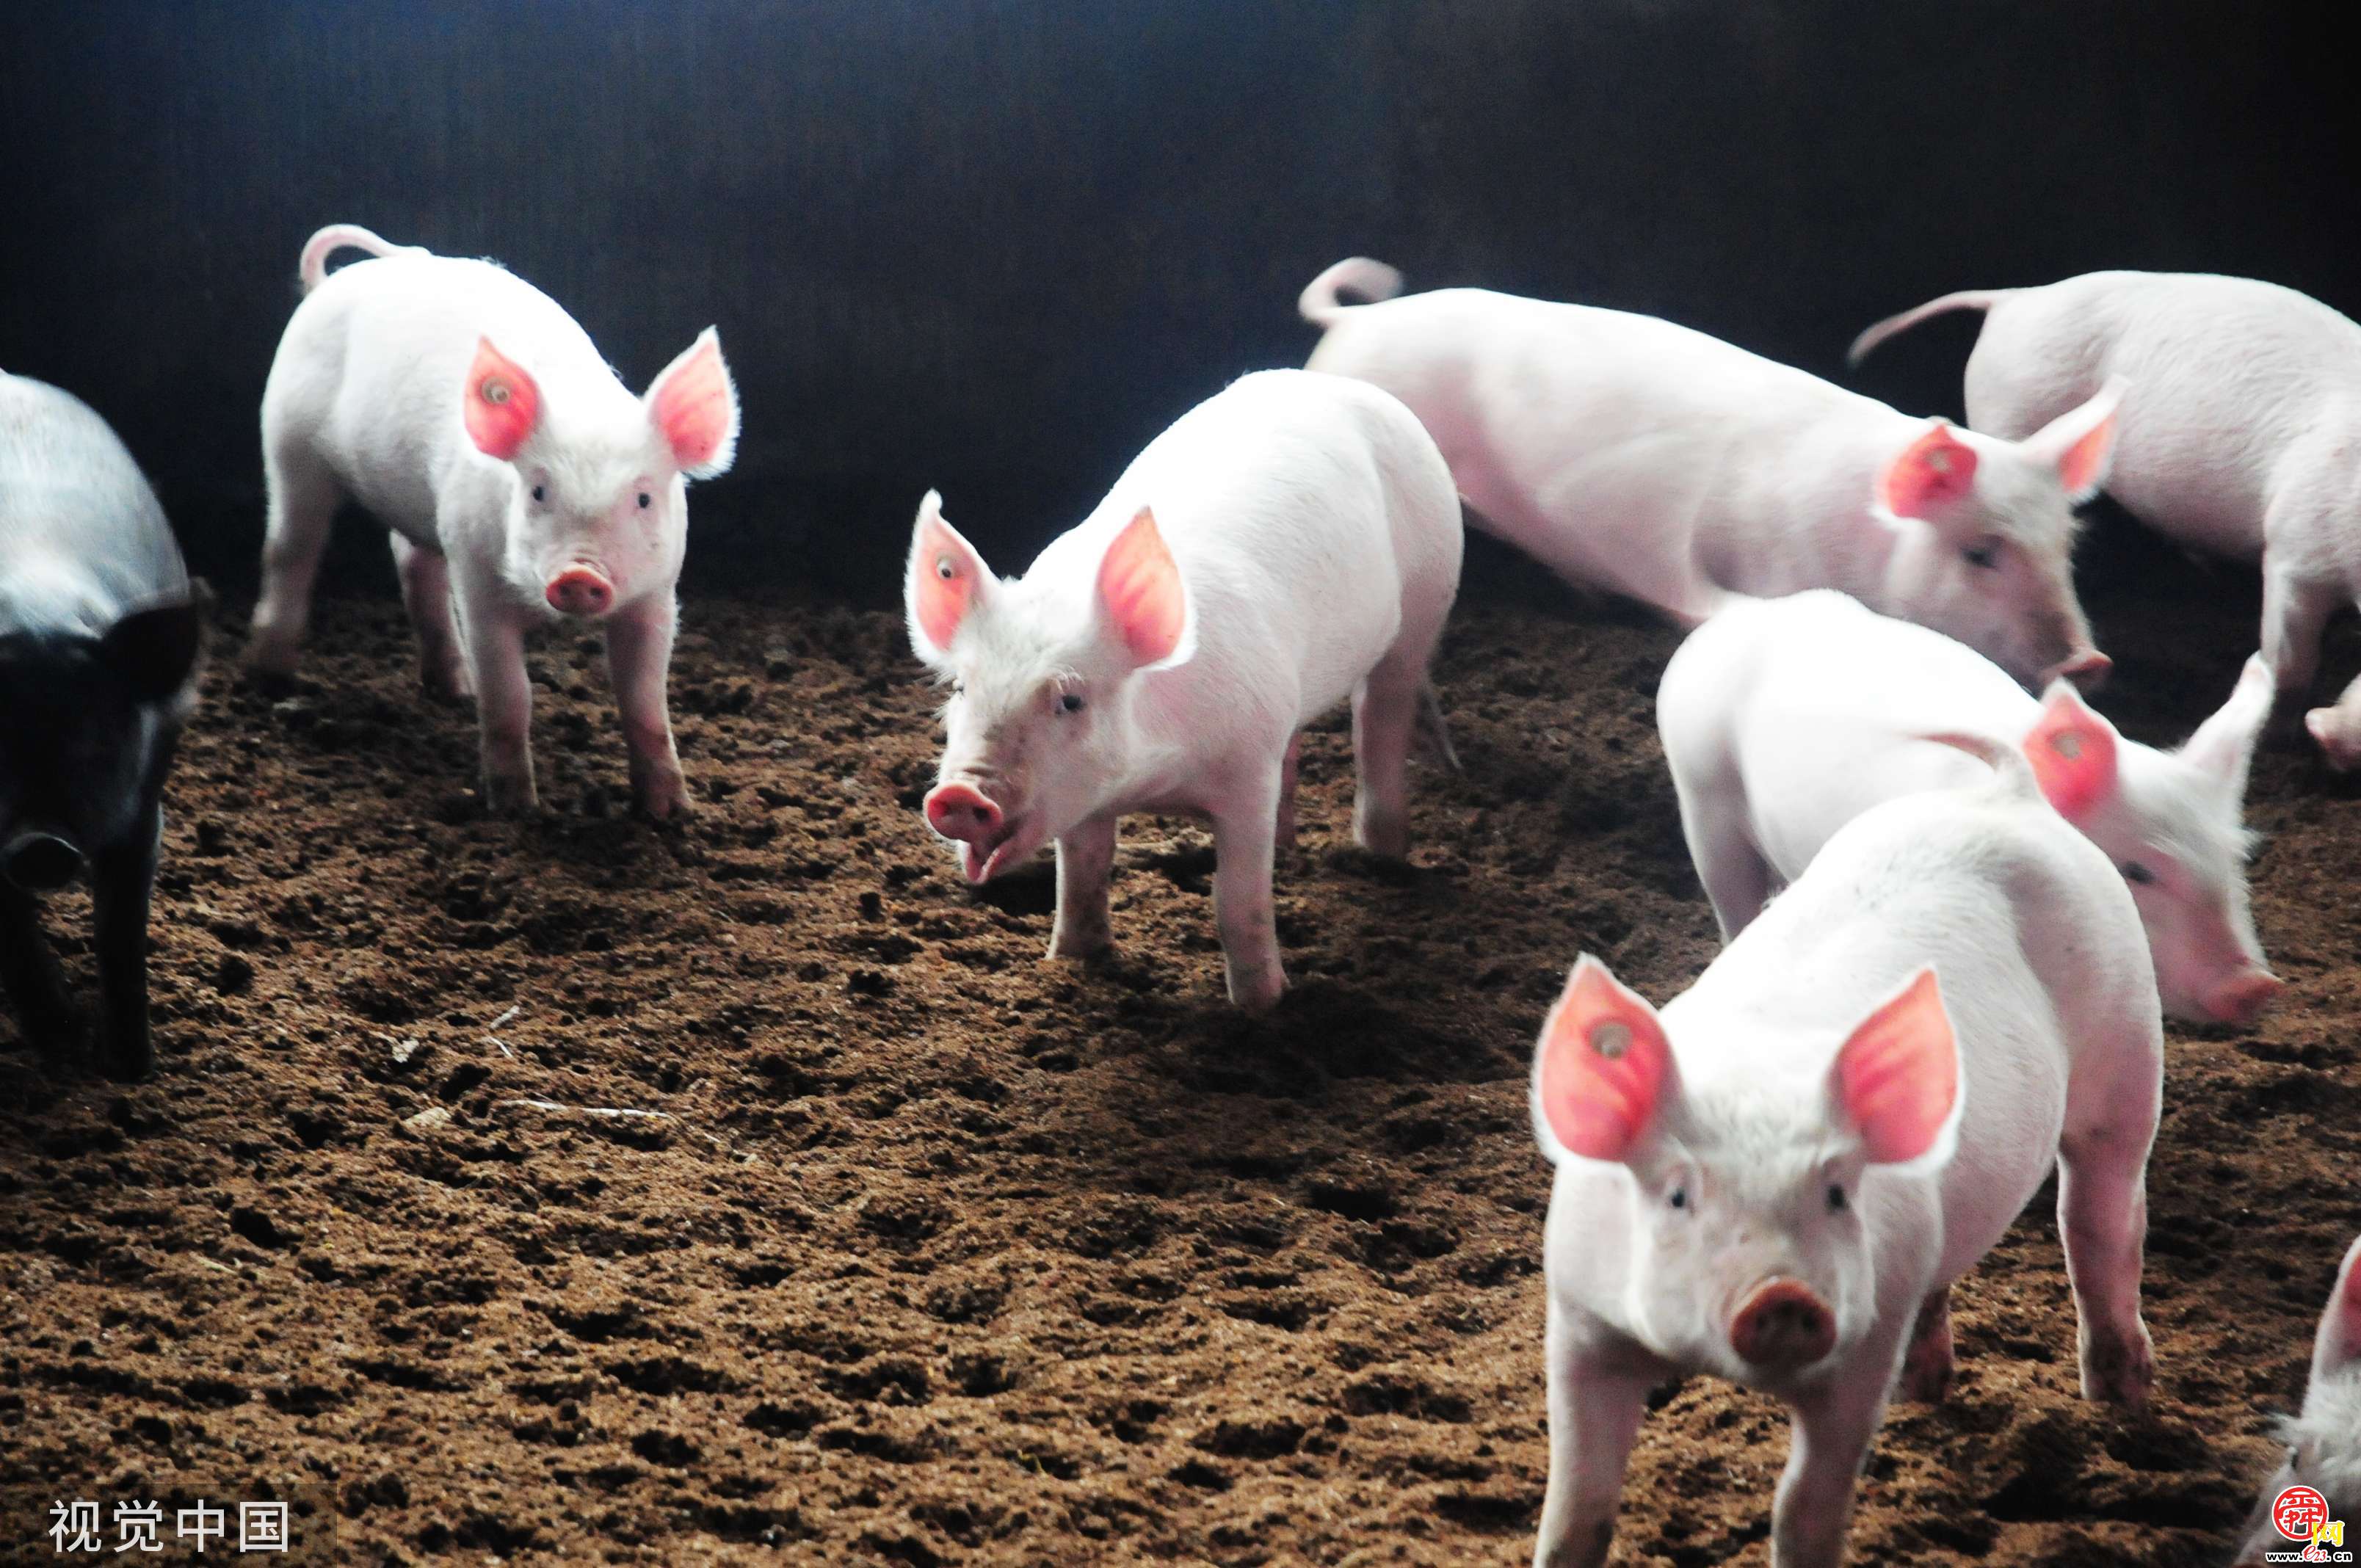 济南在全省率先试点开展“生猪目标价格保险” 每头猪投保21元，试点生猪半年后最高可获赔1750元